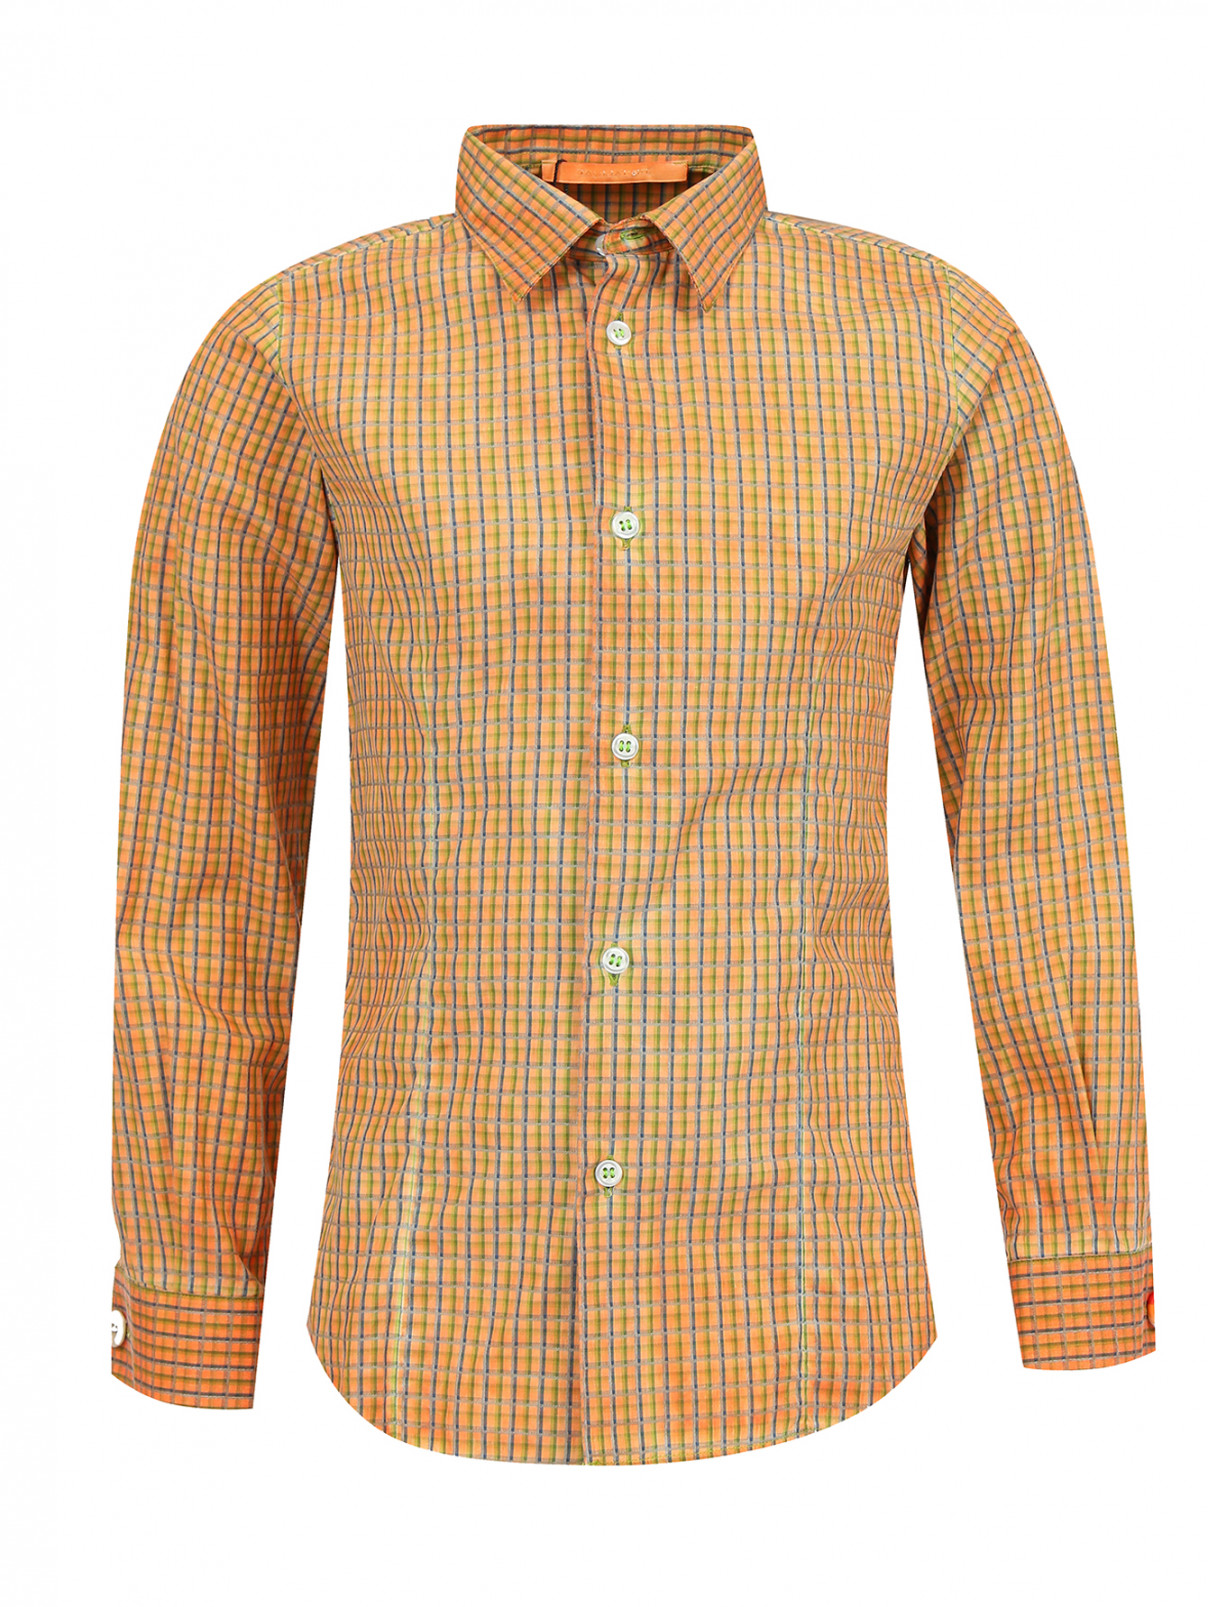 Рубашка из хлопка с узором "клетка" Tagliatore  –  Общий вид  – Цвет:  Оранжевый